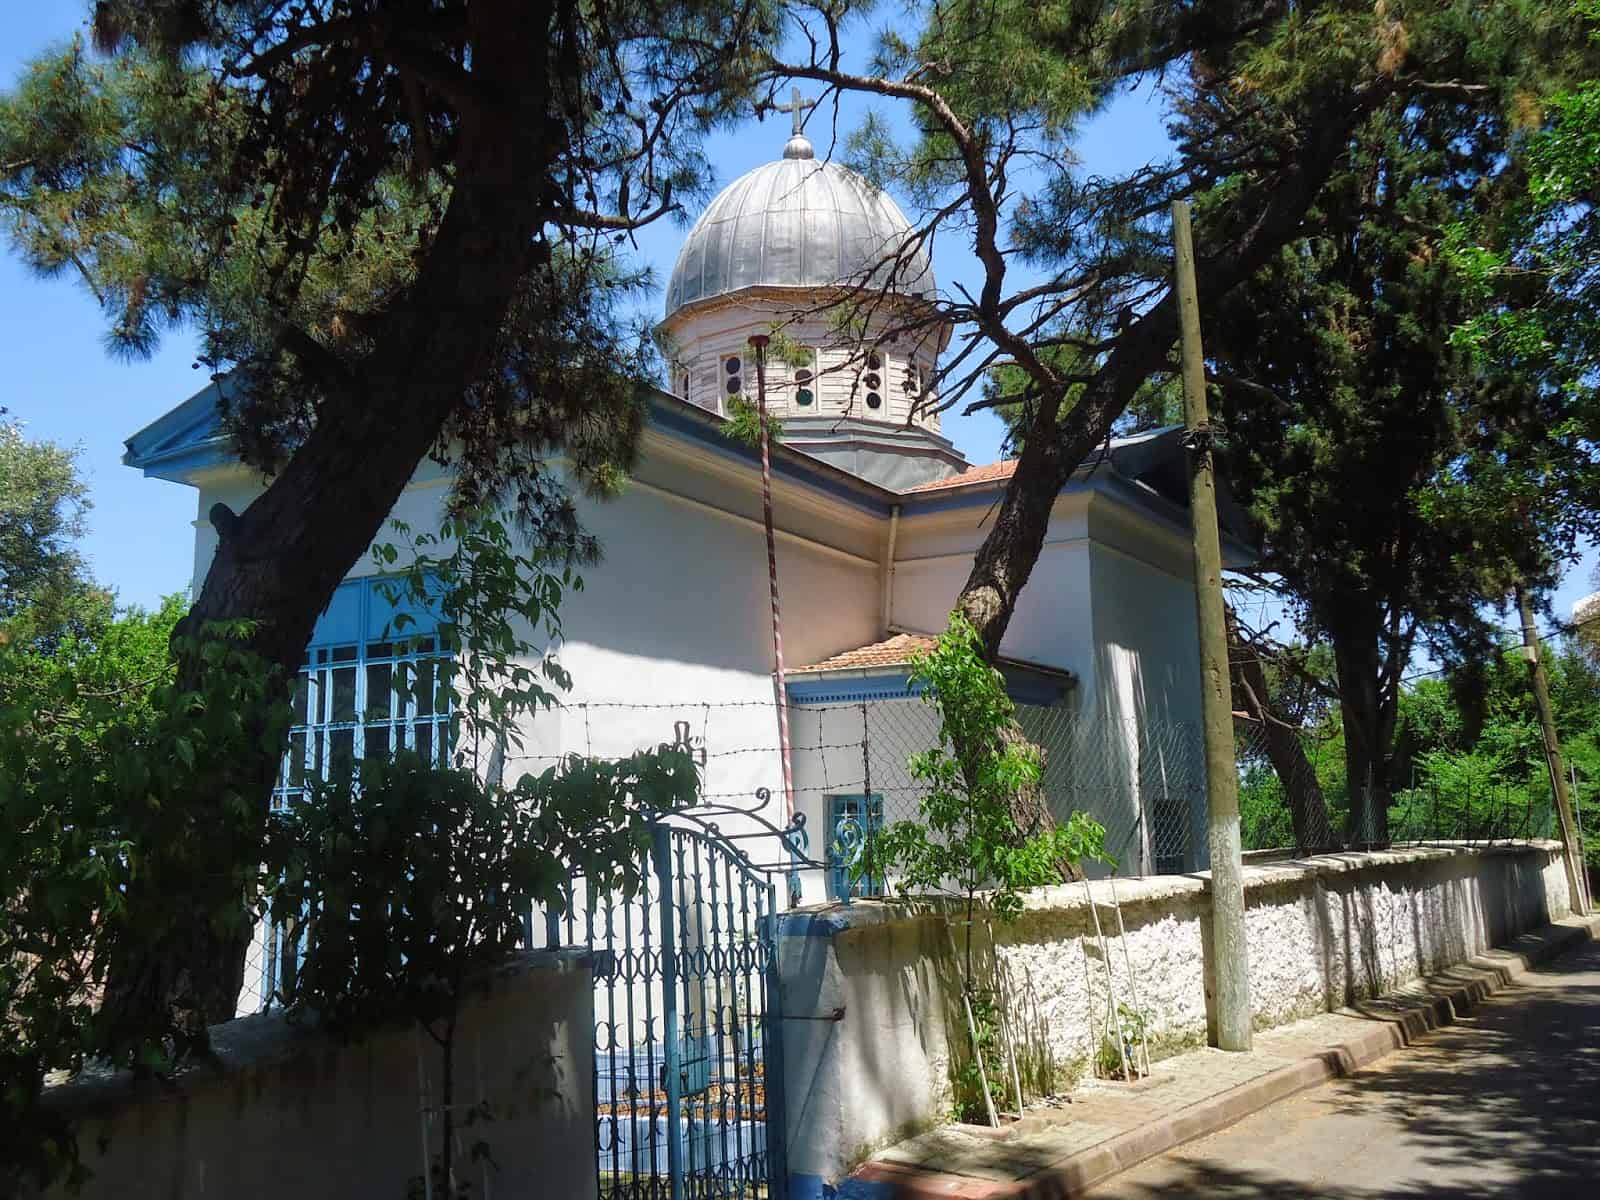 St. George Greek Orthodox Monastery on Burgazada, Princes' Islands, Istanbul, Turkey